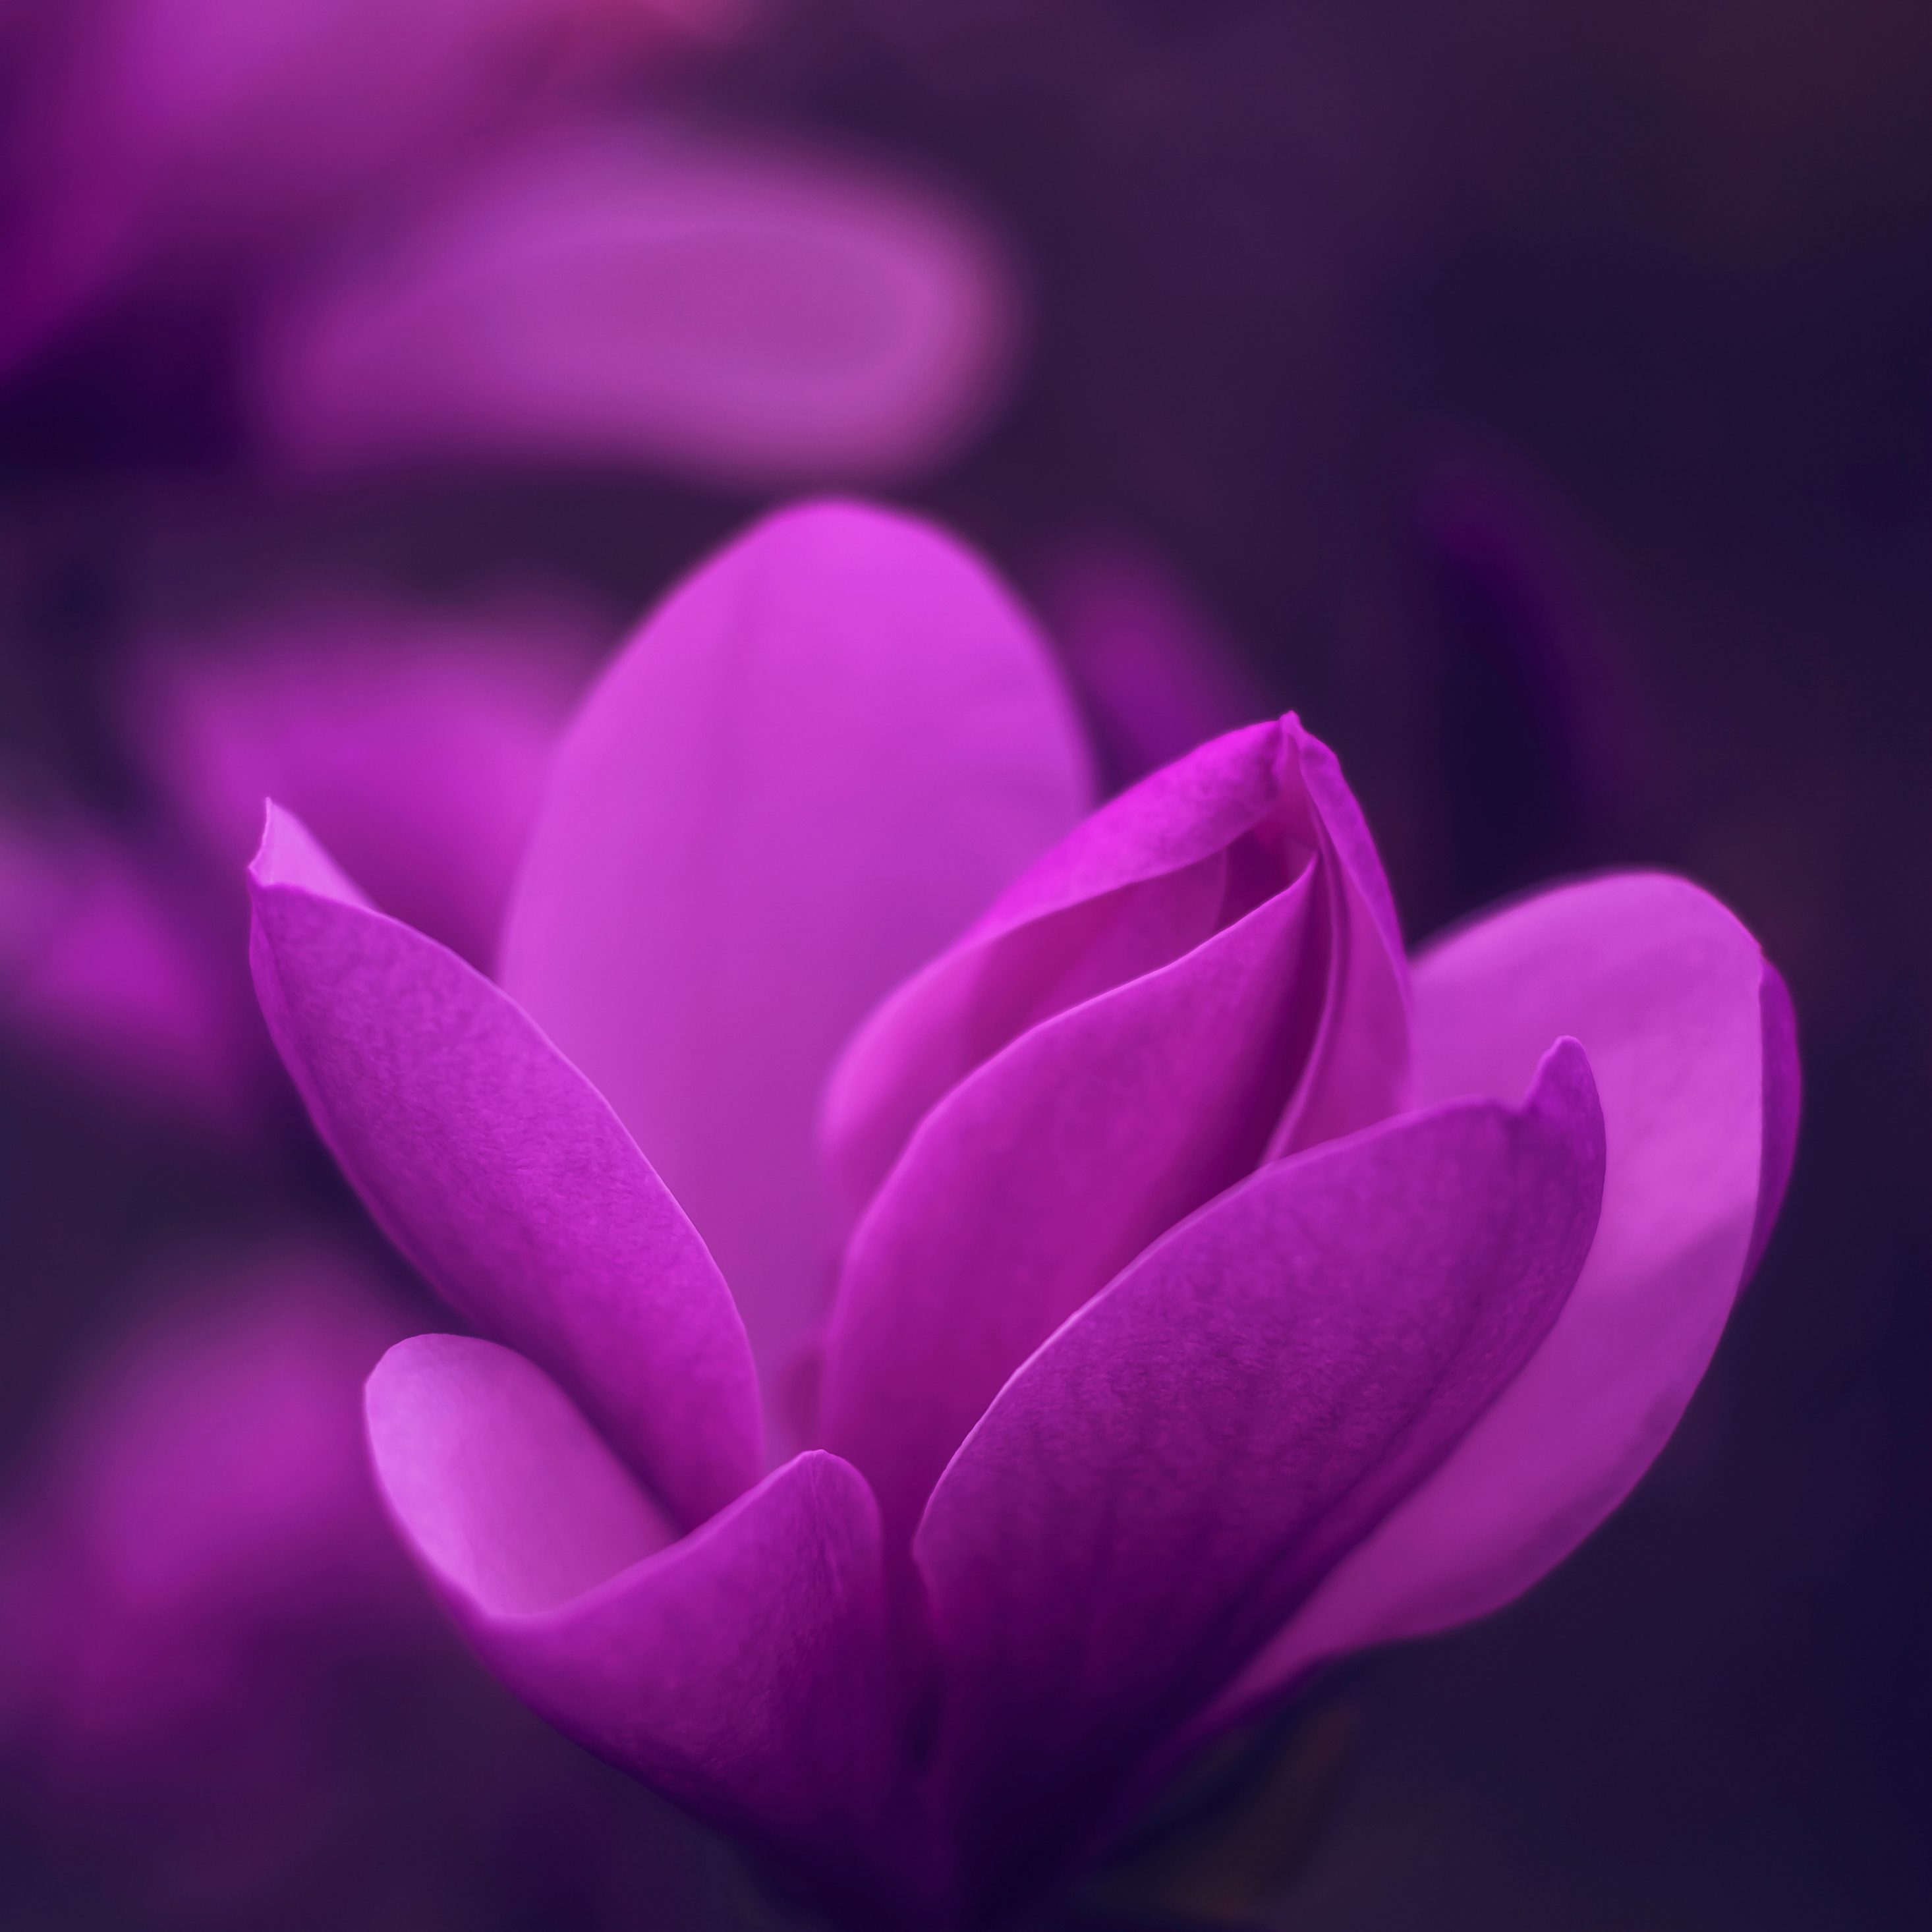 2932x2932 iPad Pro wallpaper 4k Purple Bloom Blossom Petaled Flower iPad Wallpaper 2932x2932 pixels resolution